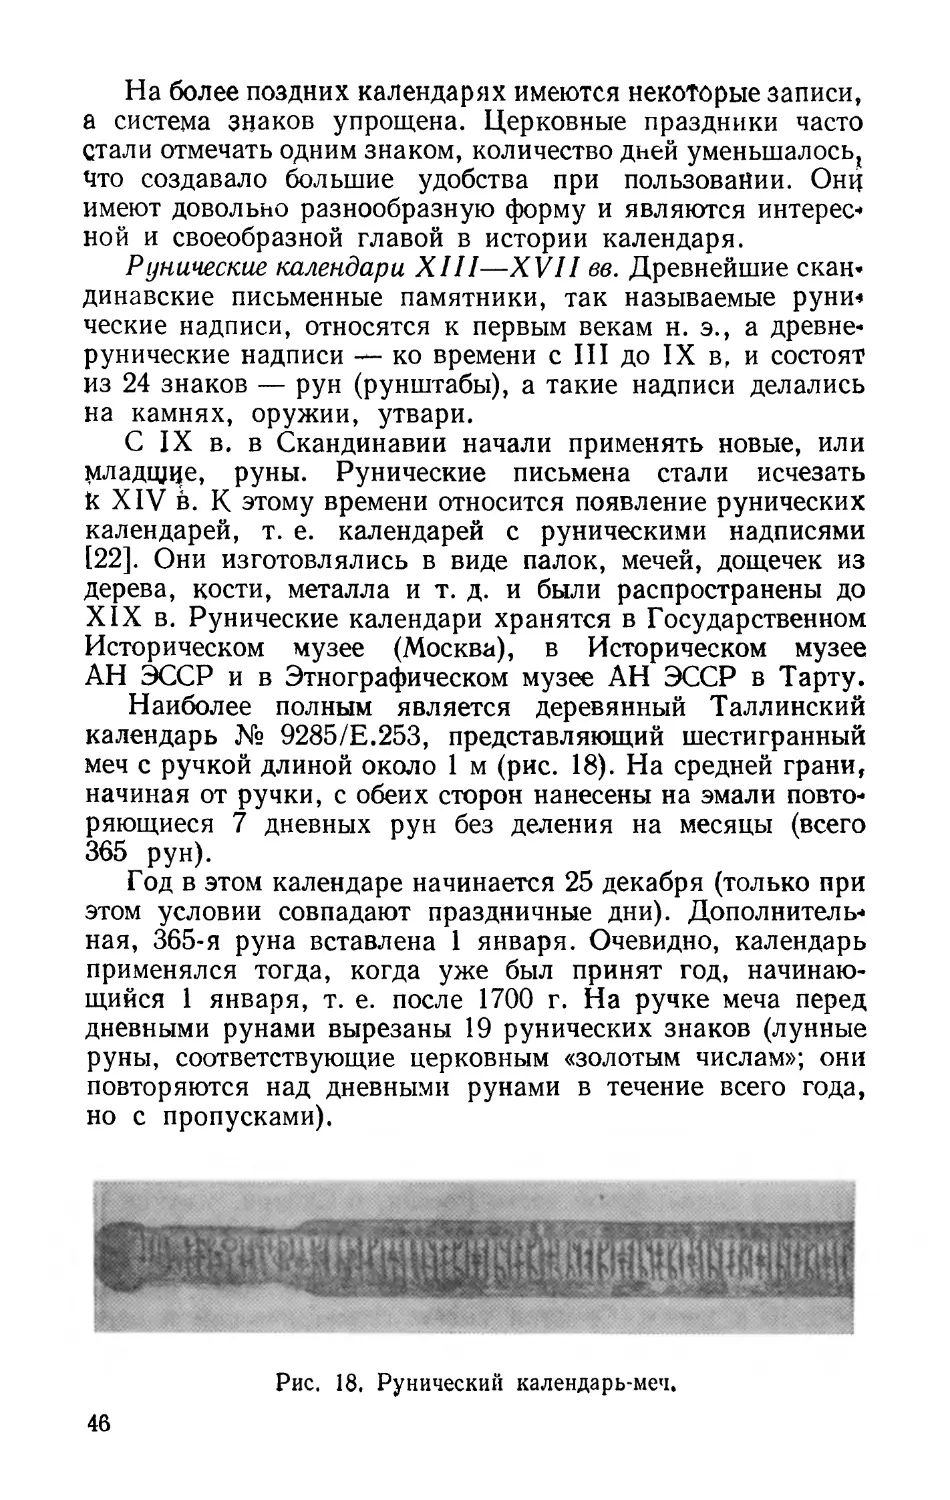 Рунические календари XIII—XVII вв.